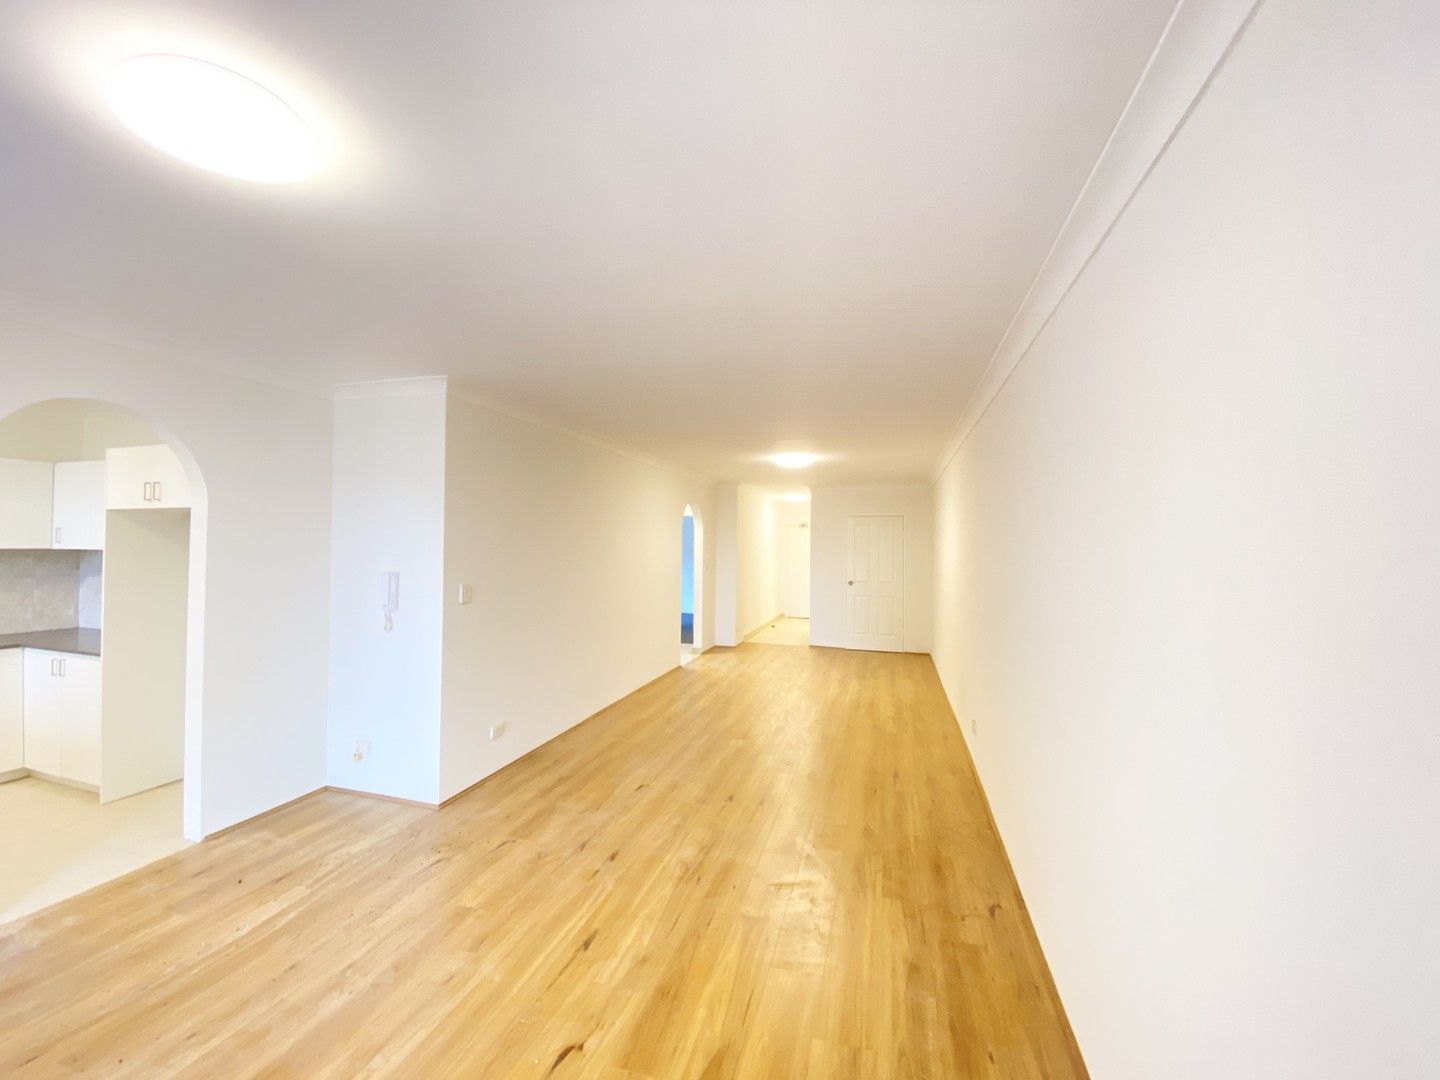 2 bedrooms Apartment / Unit / Flat in 9/57-59 Ocean Street PENSHURST NSW, 2222